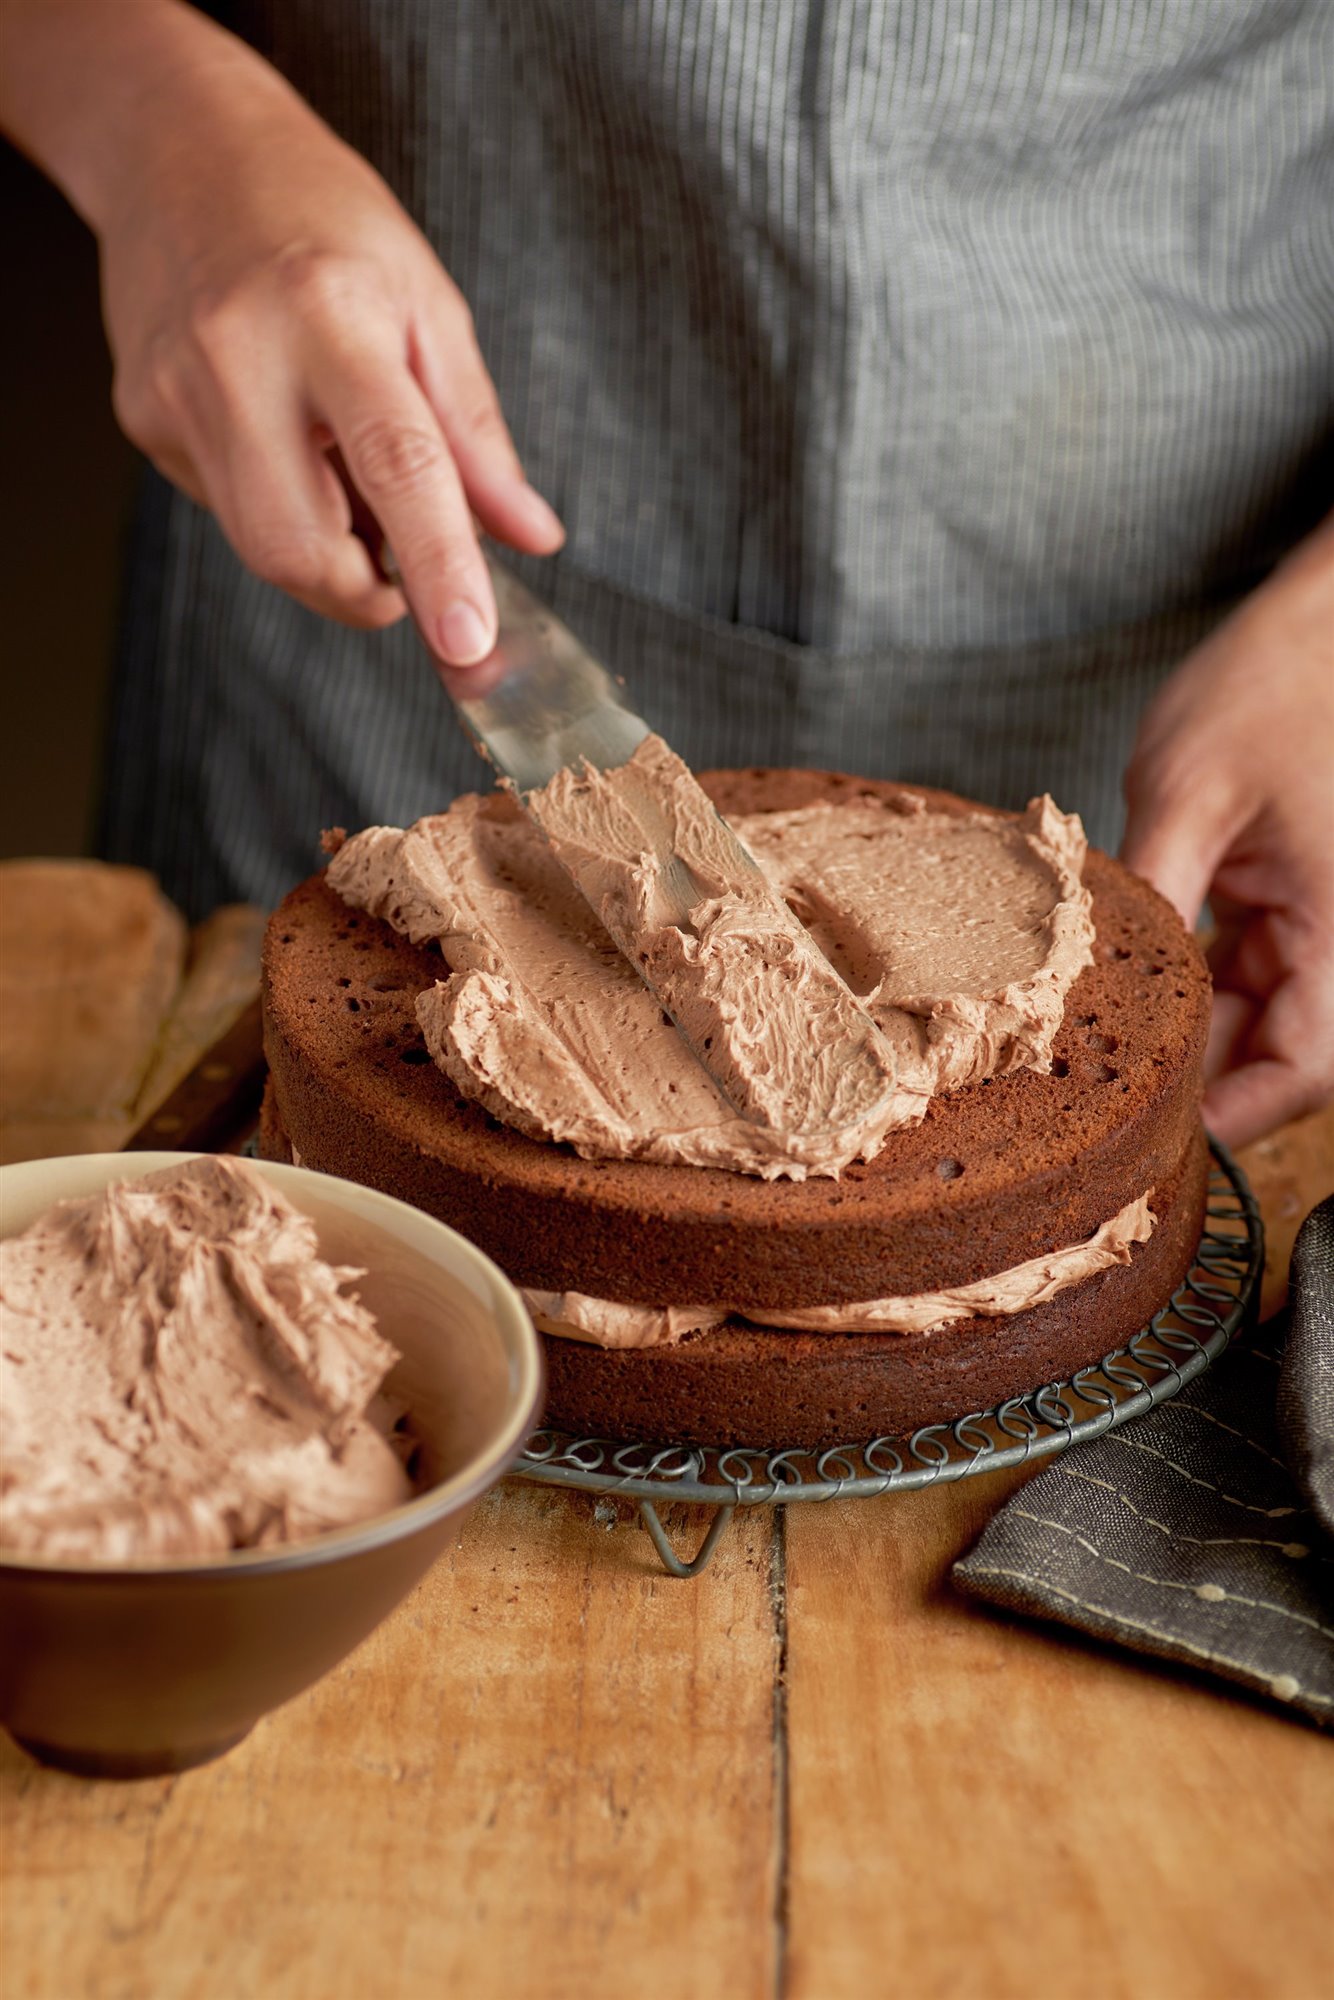 7. Rellena y cubre el pastel con el chocolate